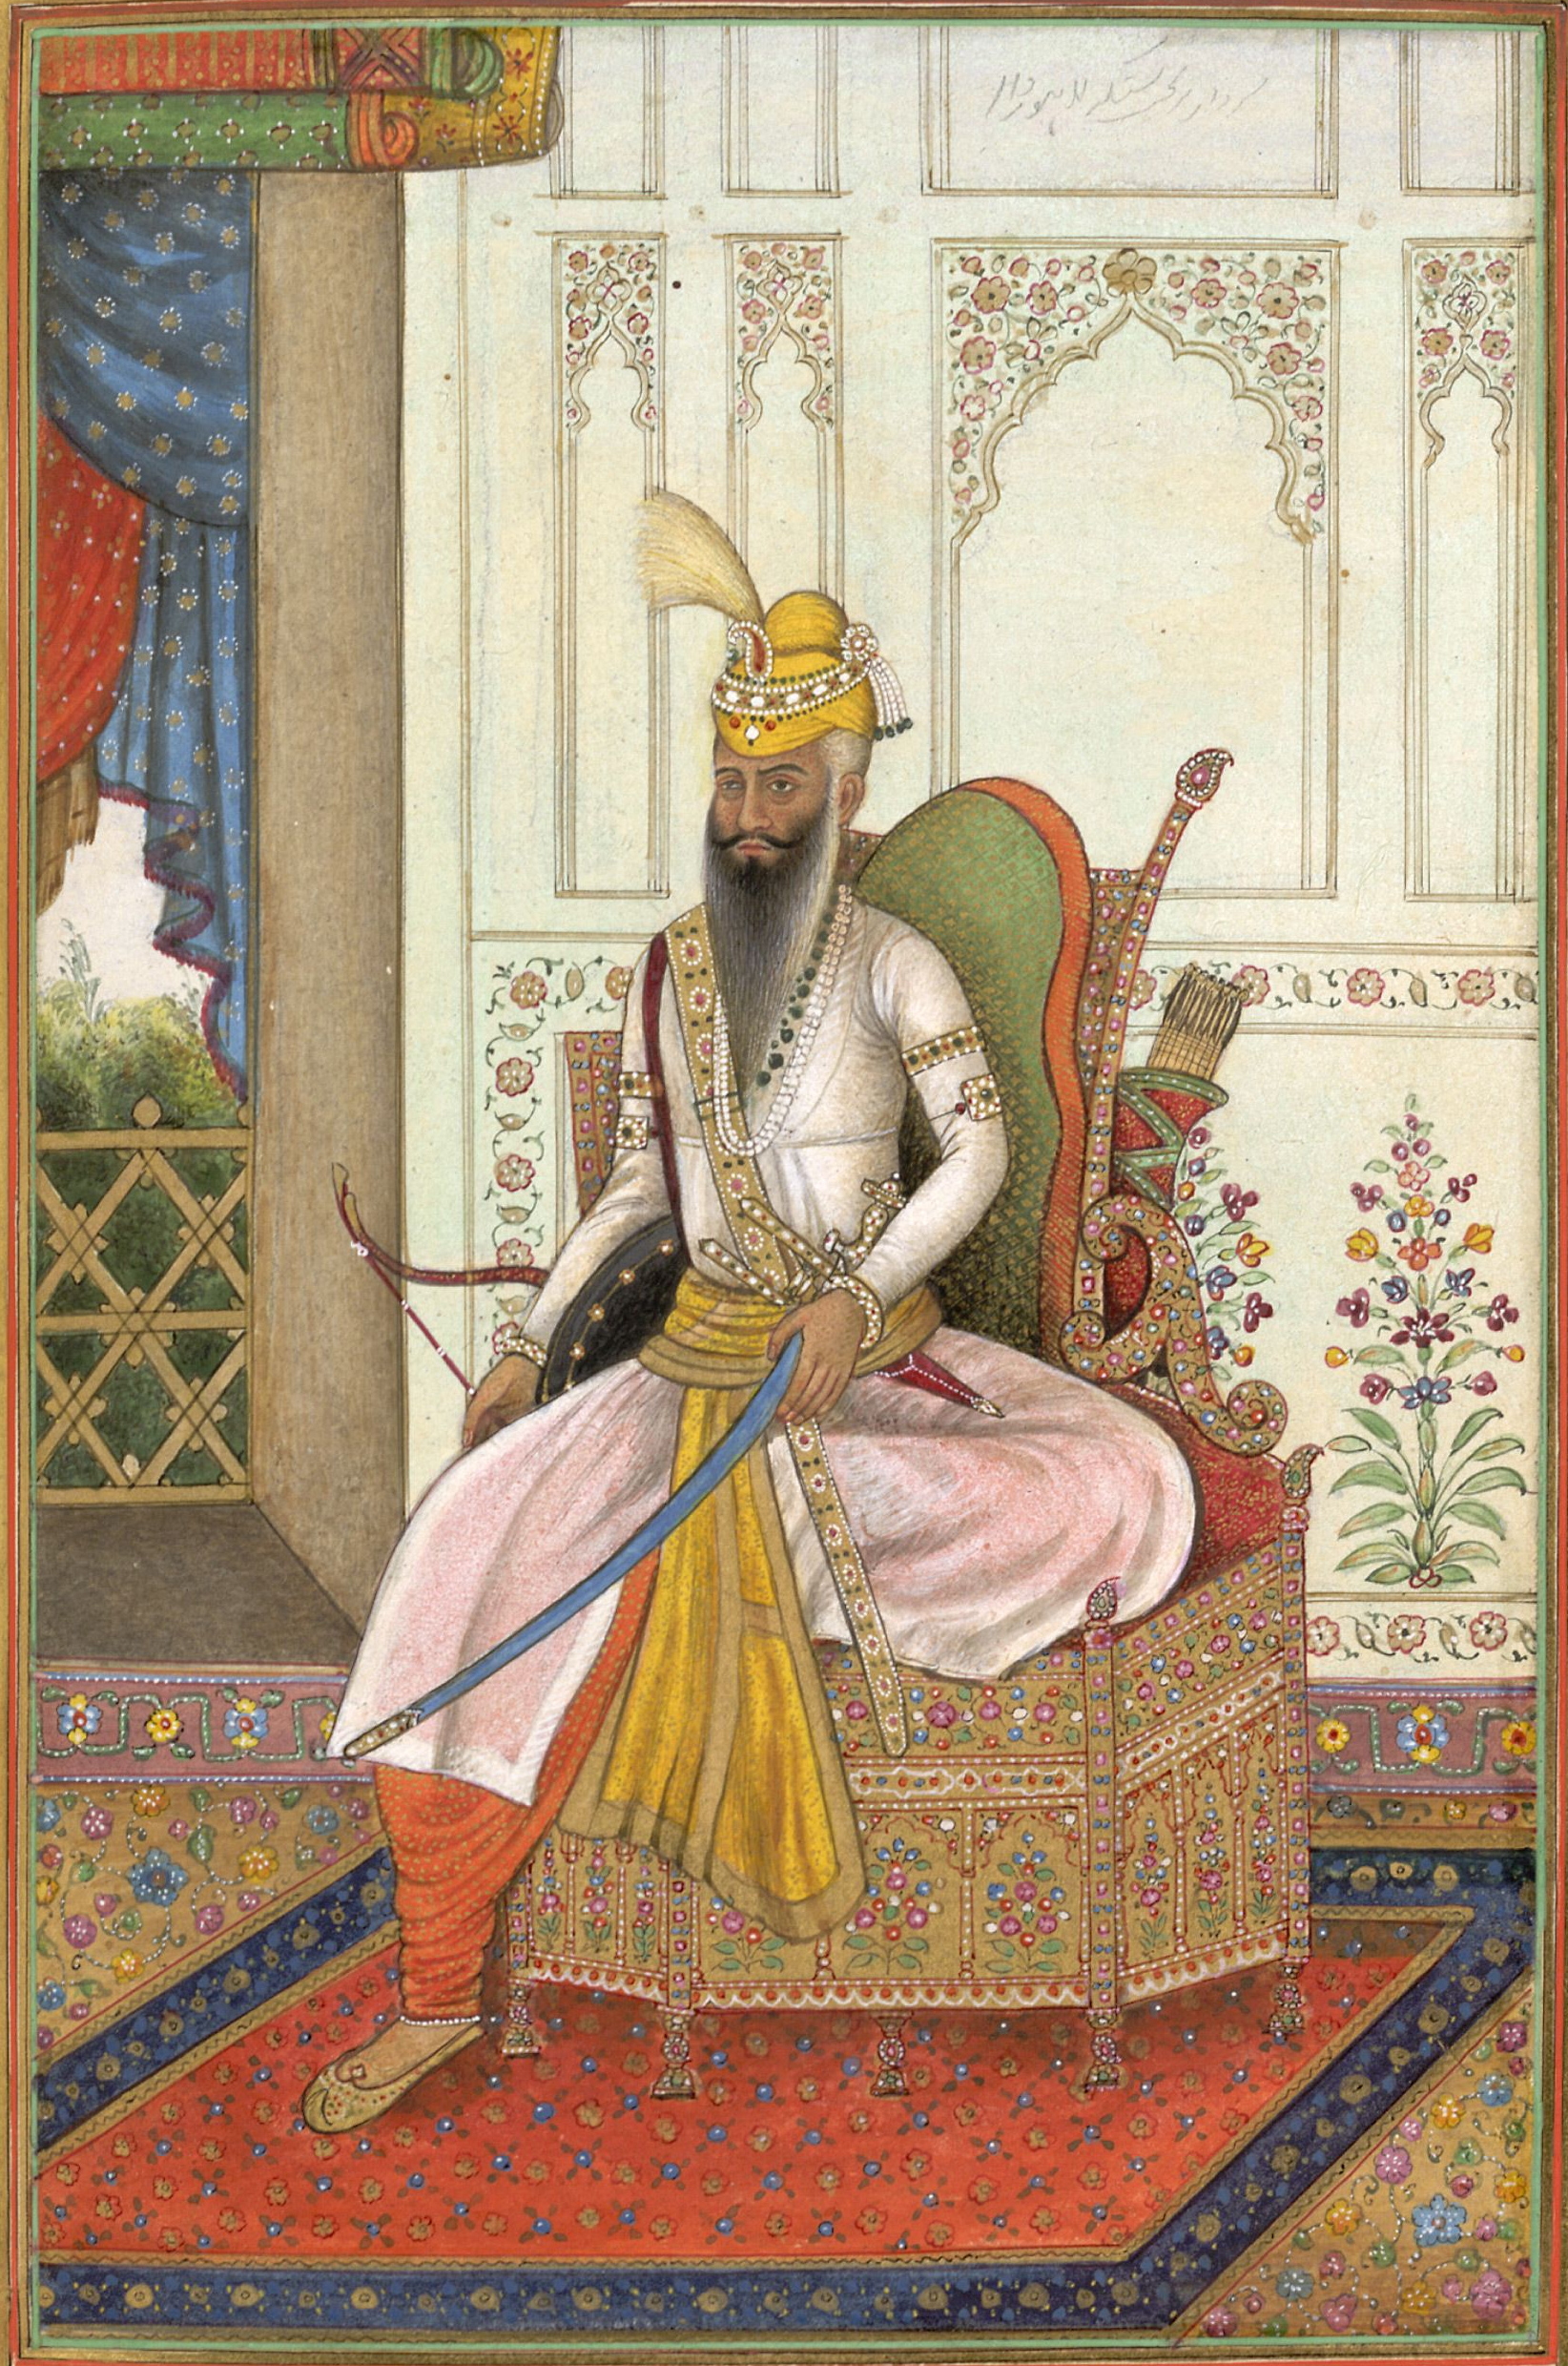 Maharaja Ranjit Singh of Punjab